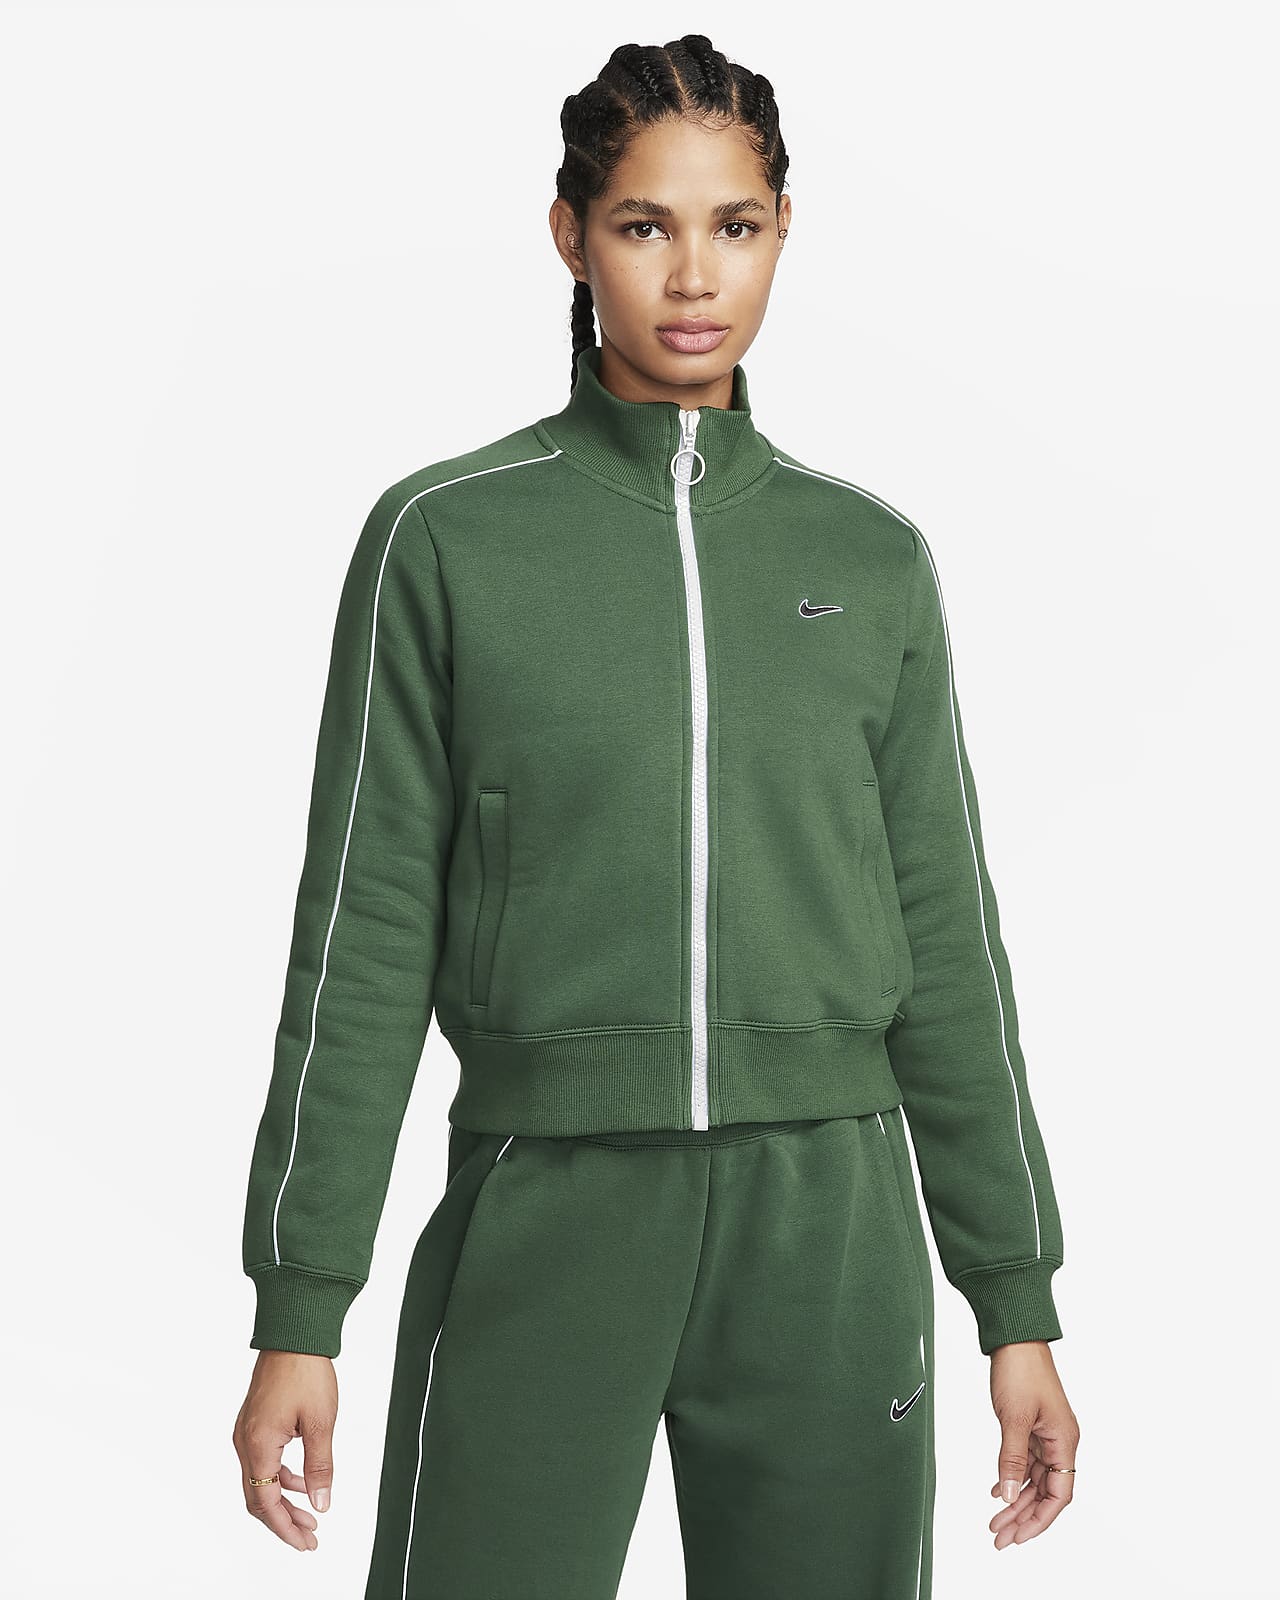 Nike Sportswear Women's Fleece Track Top.